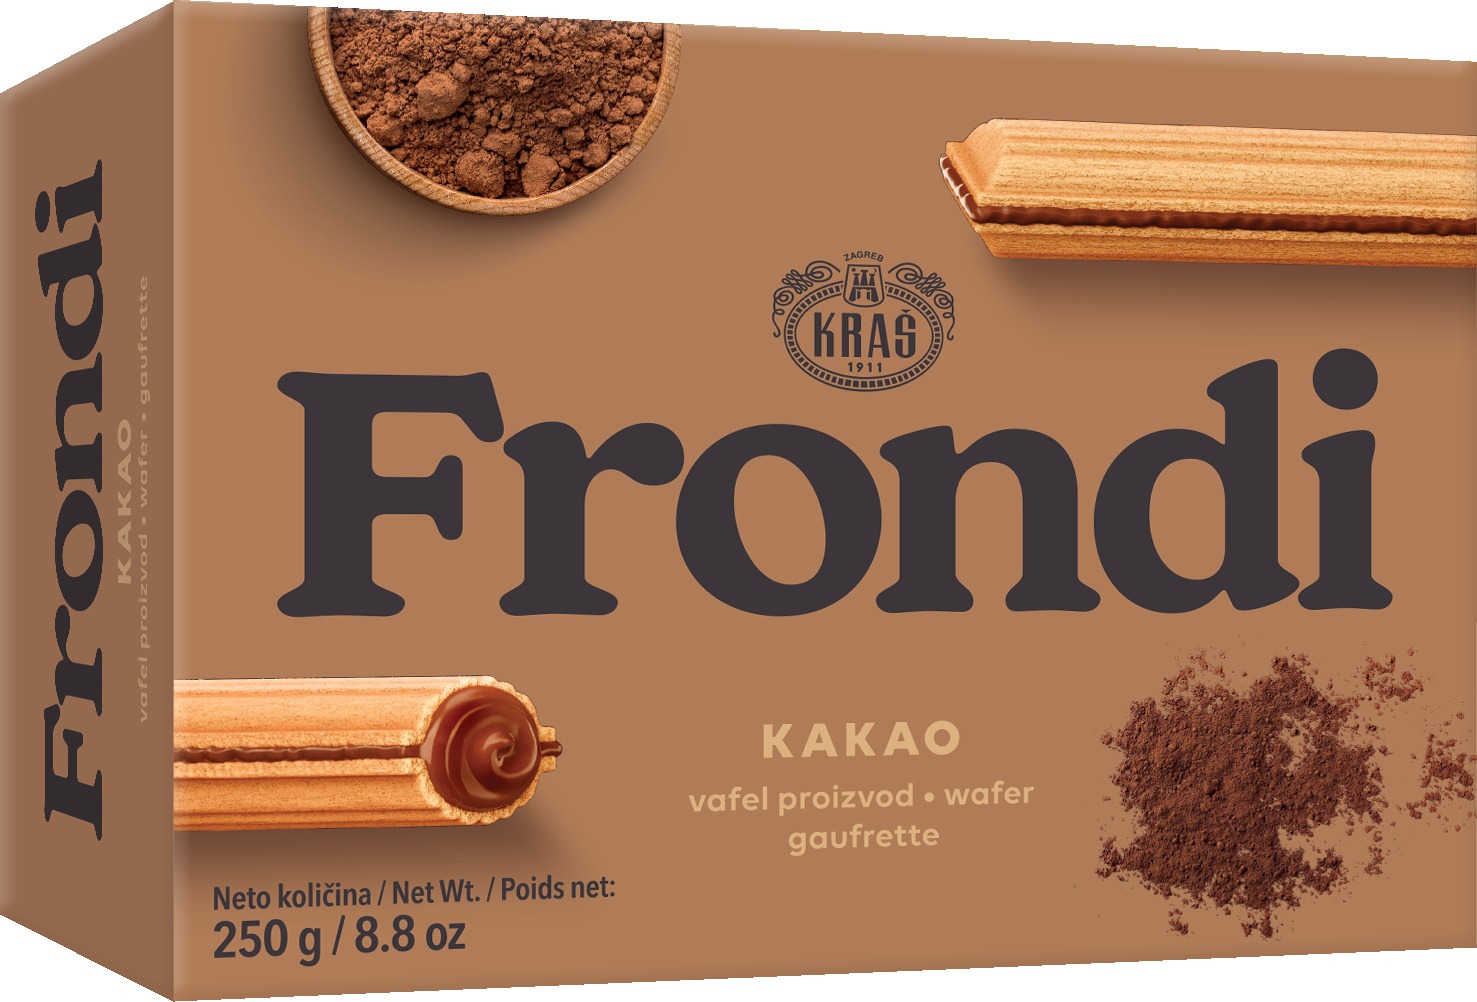 Slika za Vafel kakao Frondi 250g